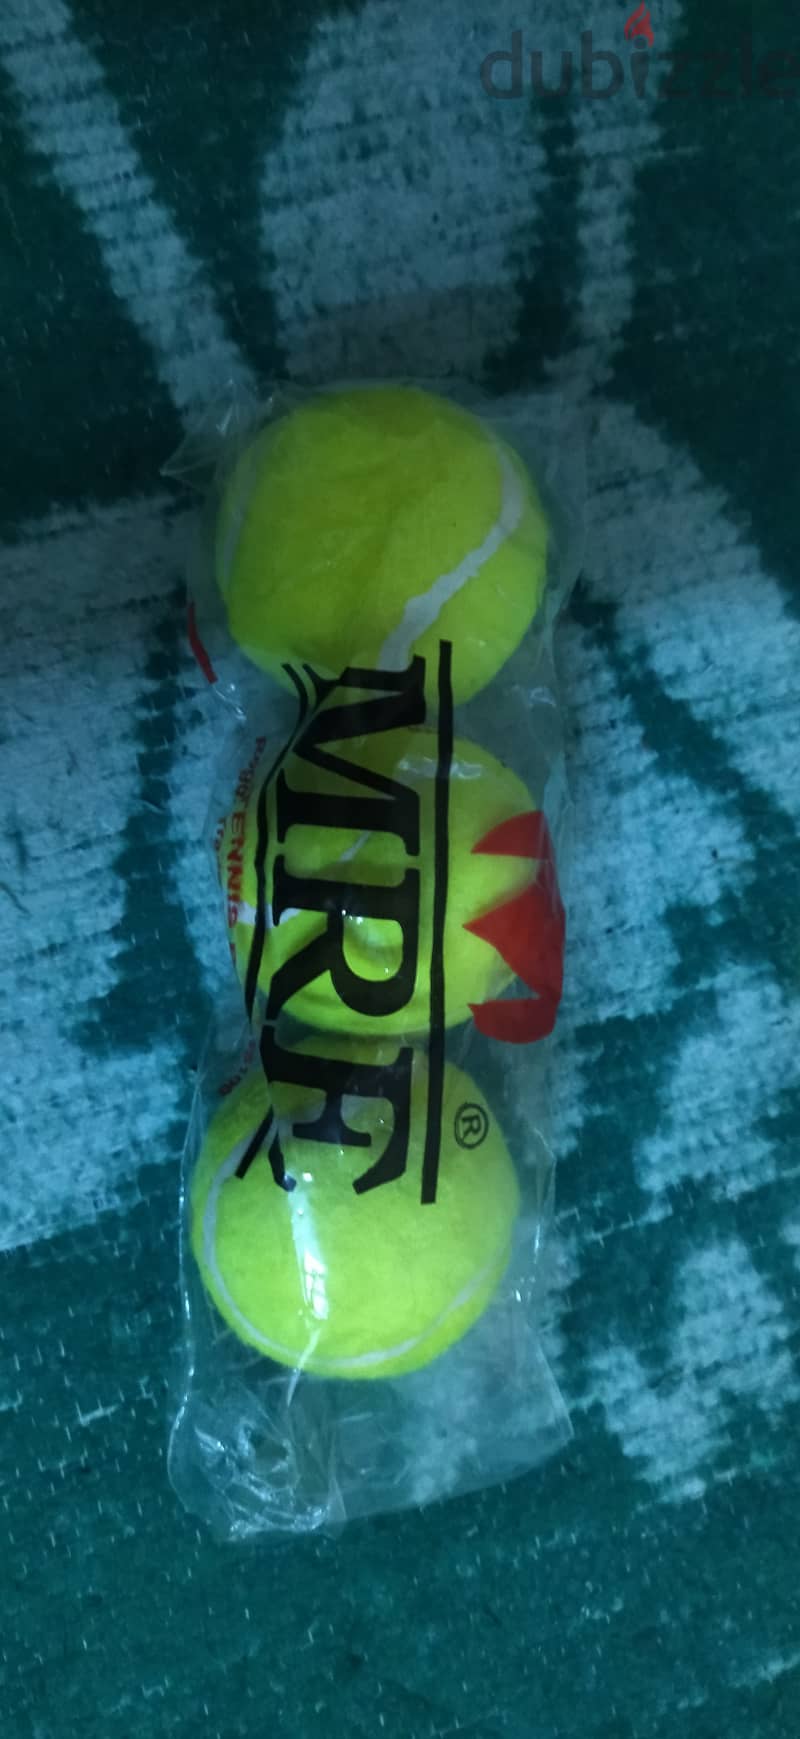 Tennis ball (3 piece ) 5